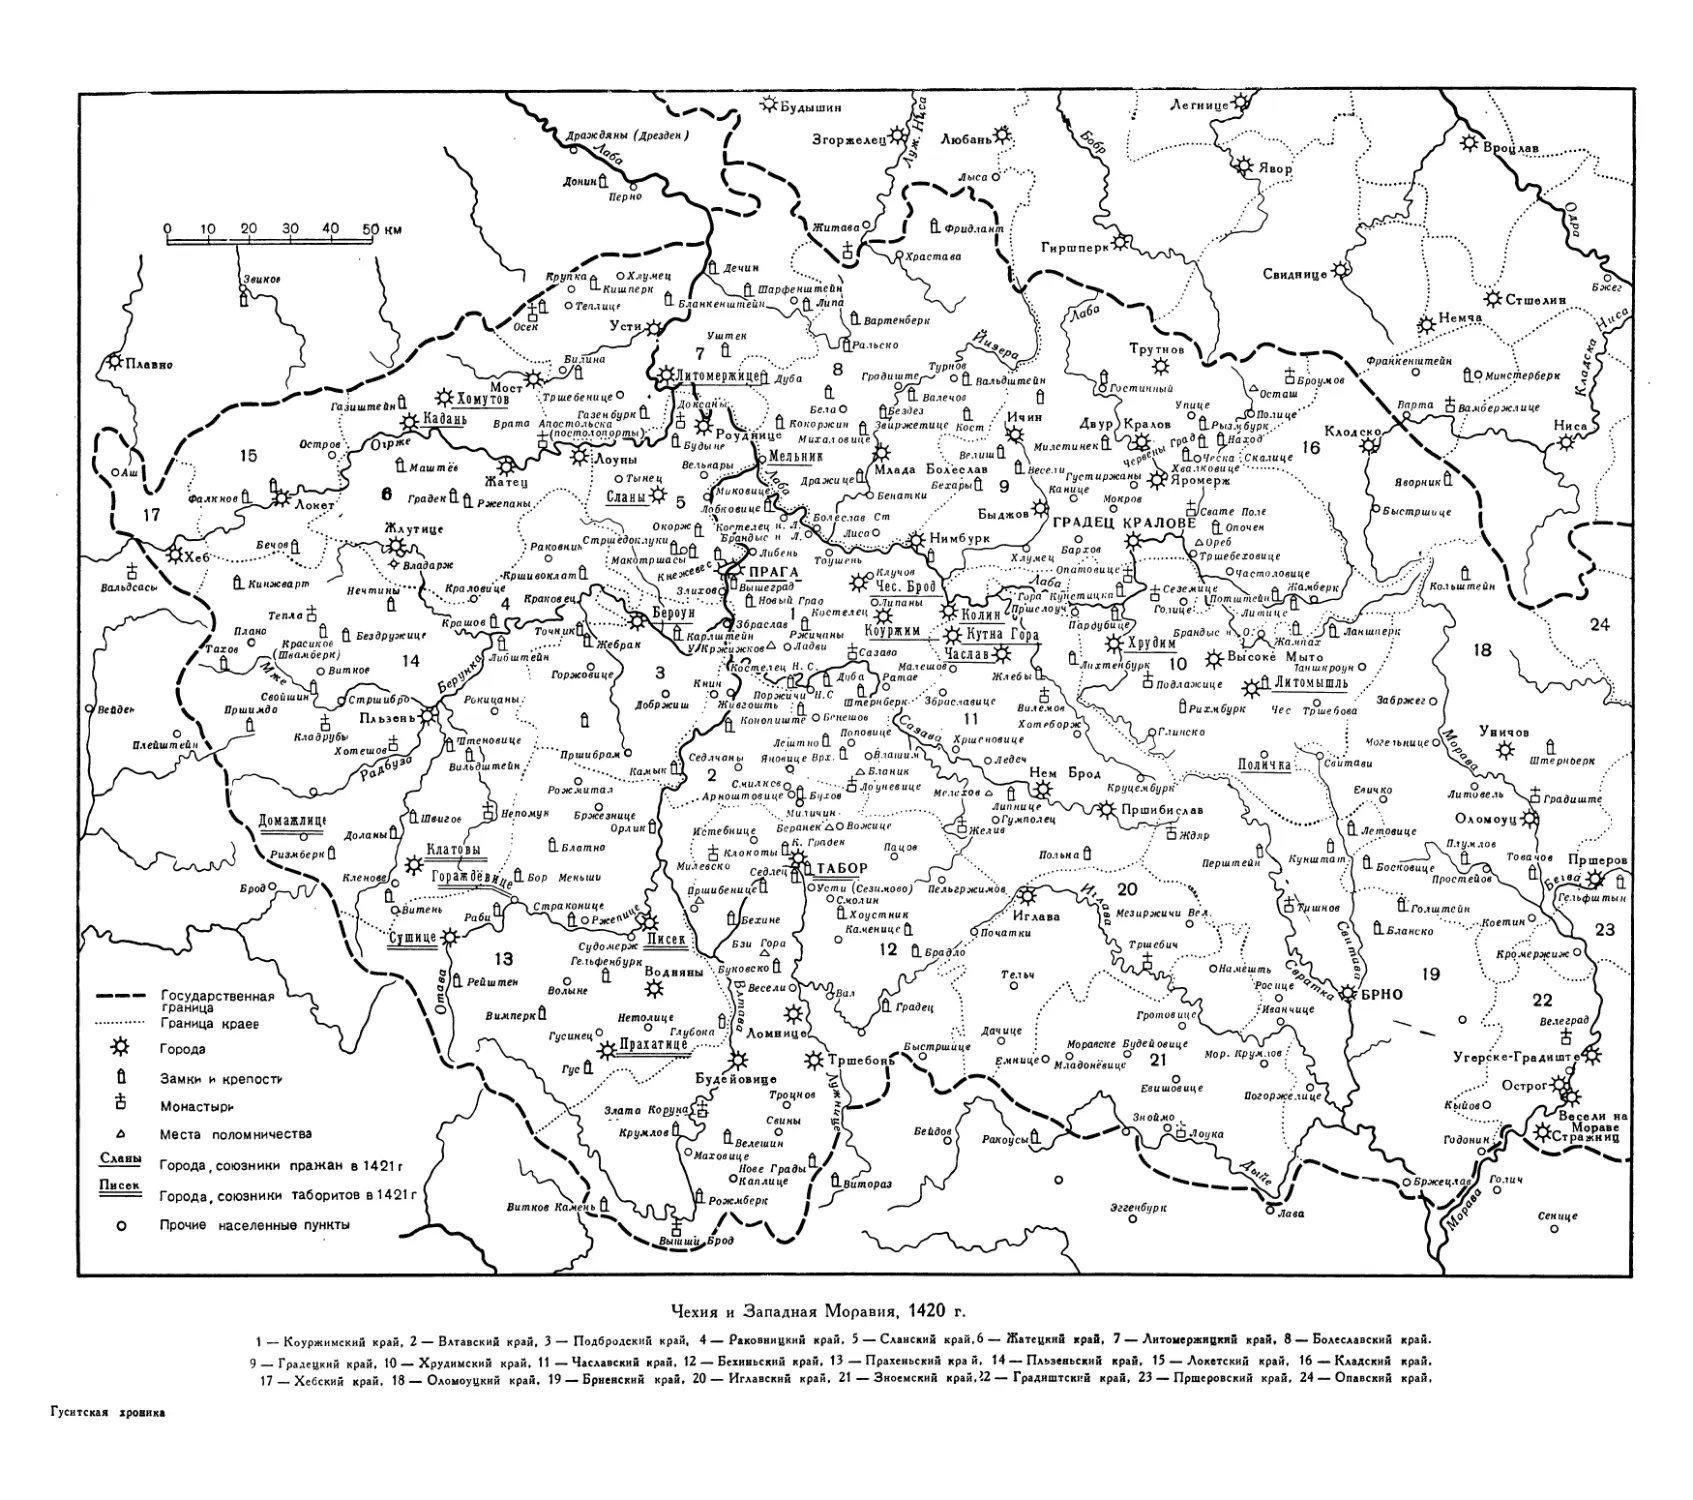 Вклейка. Чехия и Западная Моравия, 1420 г.